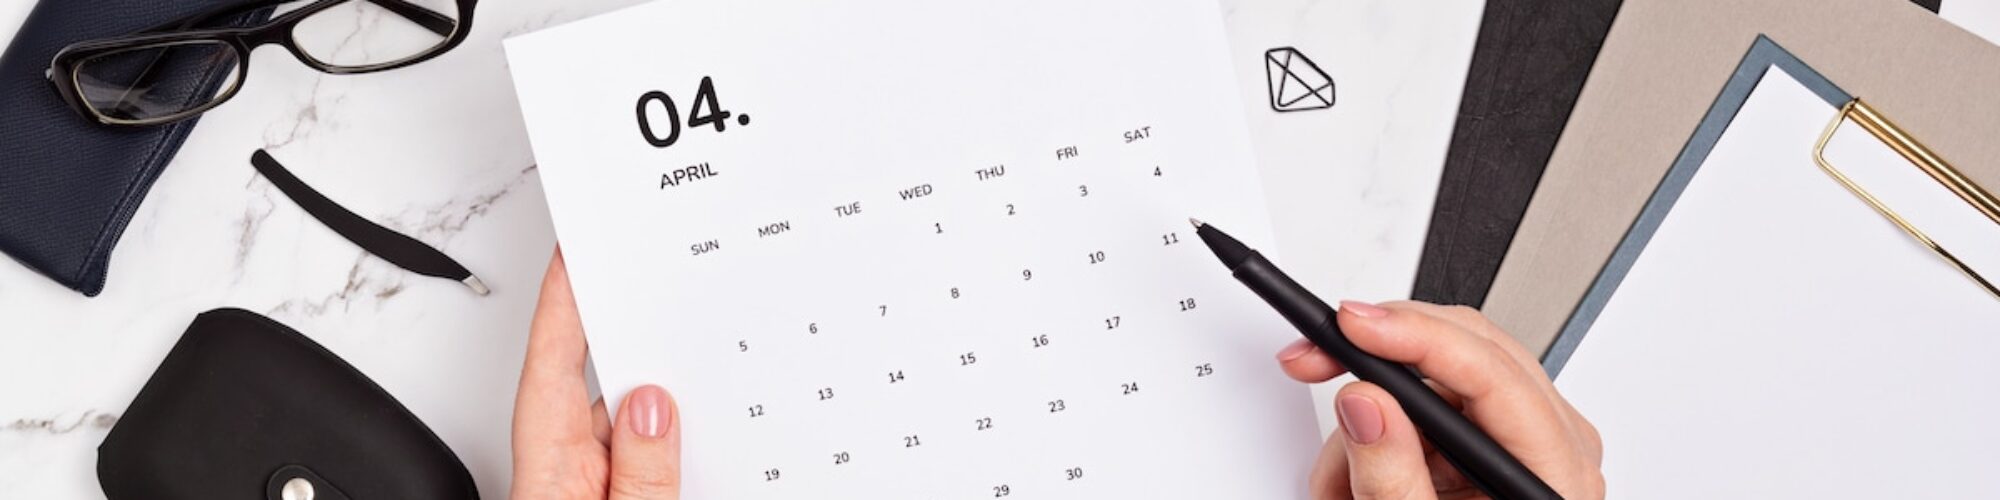 realizzare calendario editoriale blog